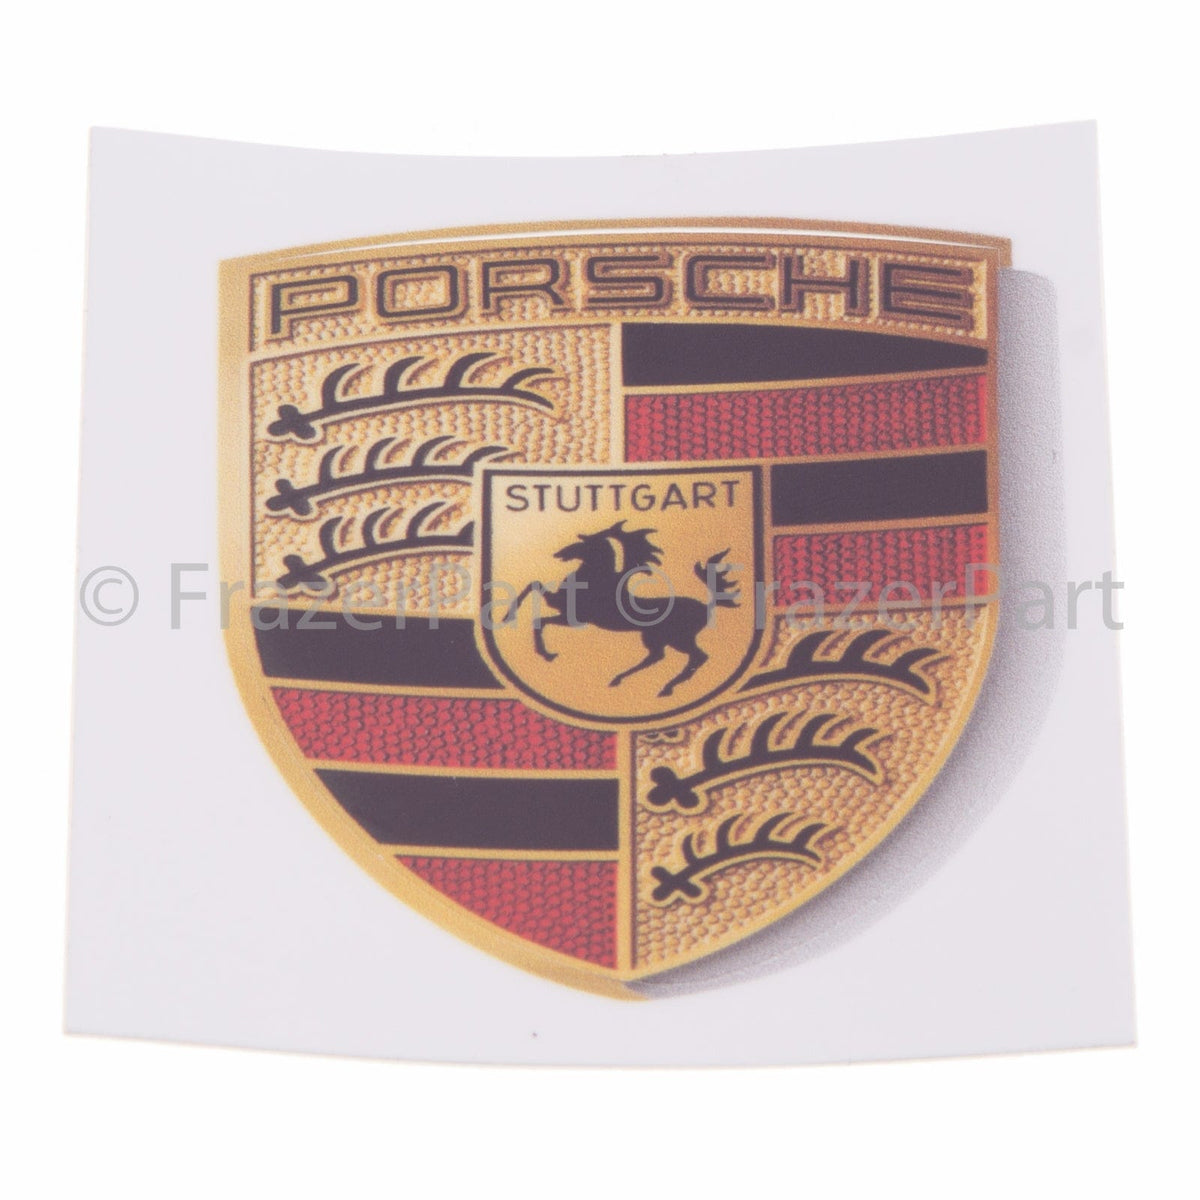 Adhesivo y calcomanía con el escudo de Porsche a todo color